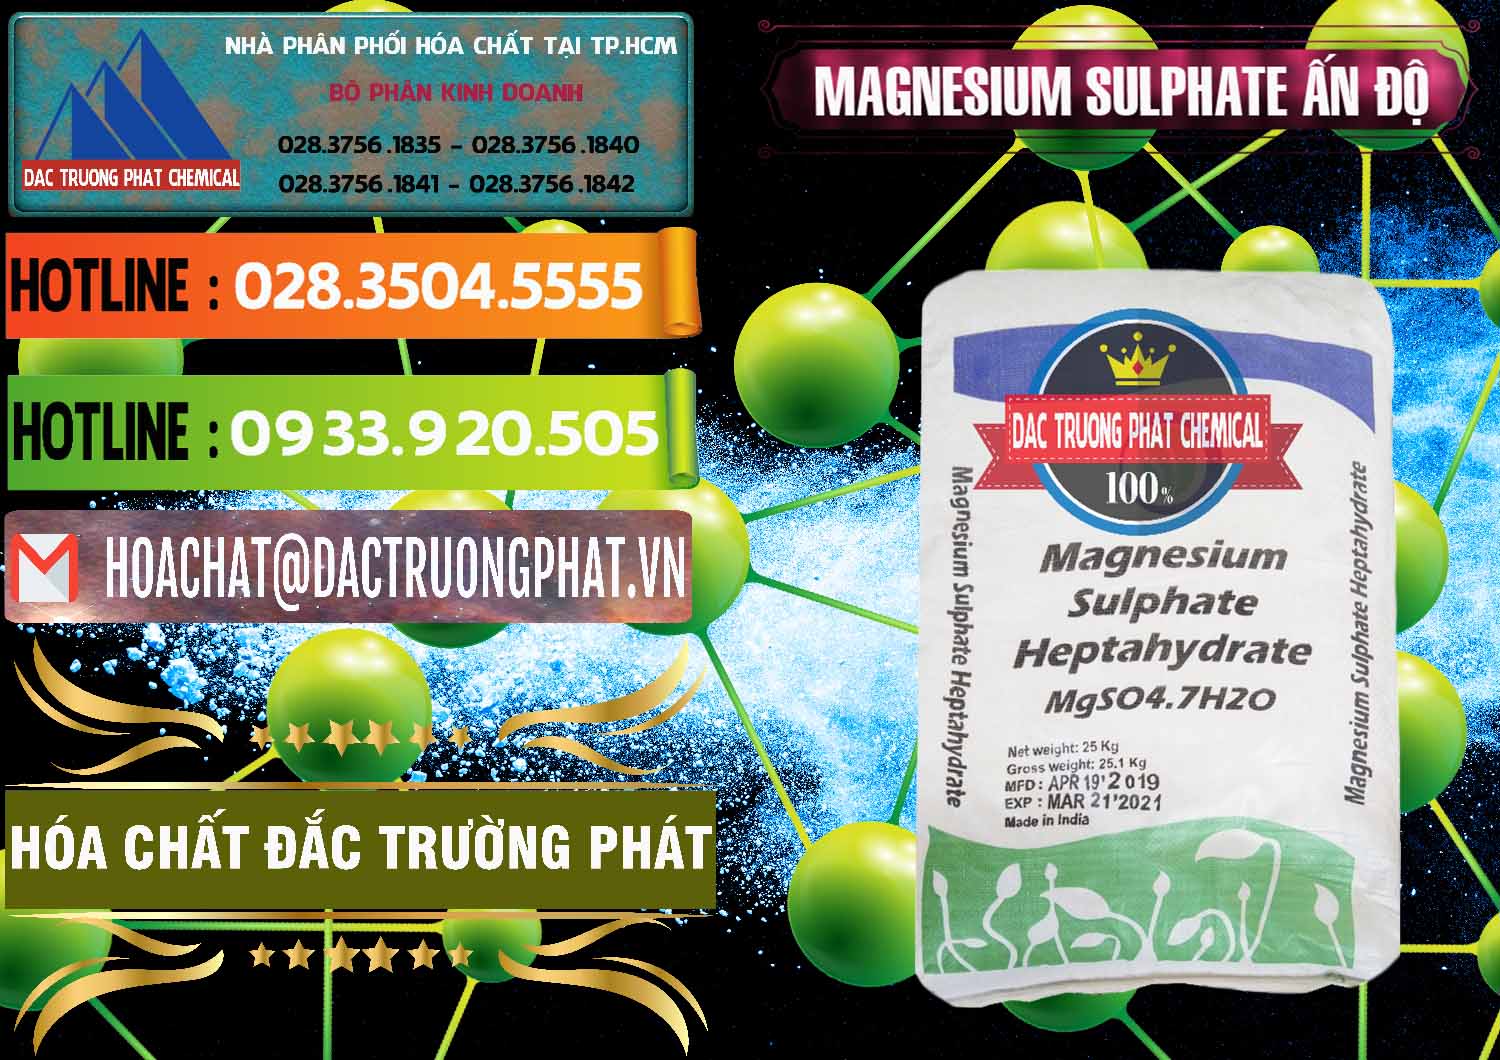 Nơi chuyên bán _ cung ứng MGSO4.7H2O – Magnesium Sulphate Heptahydrate Ấn Độ India - 0362 - Cung cấp & kinh doanh hóa chất tại TP.HCM - cungcaphoachat.com.vn